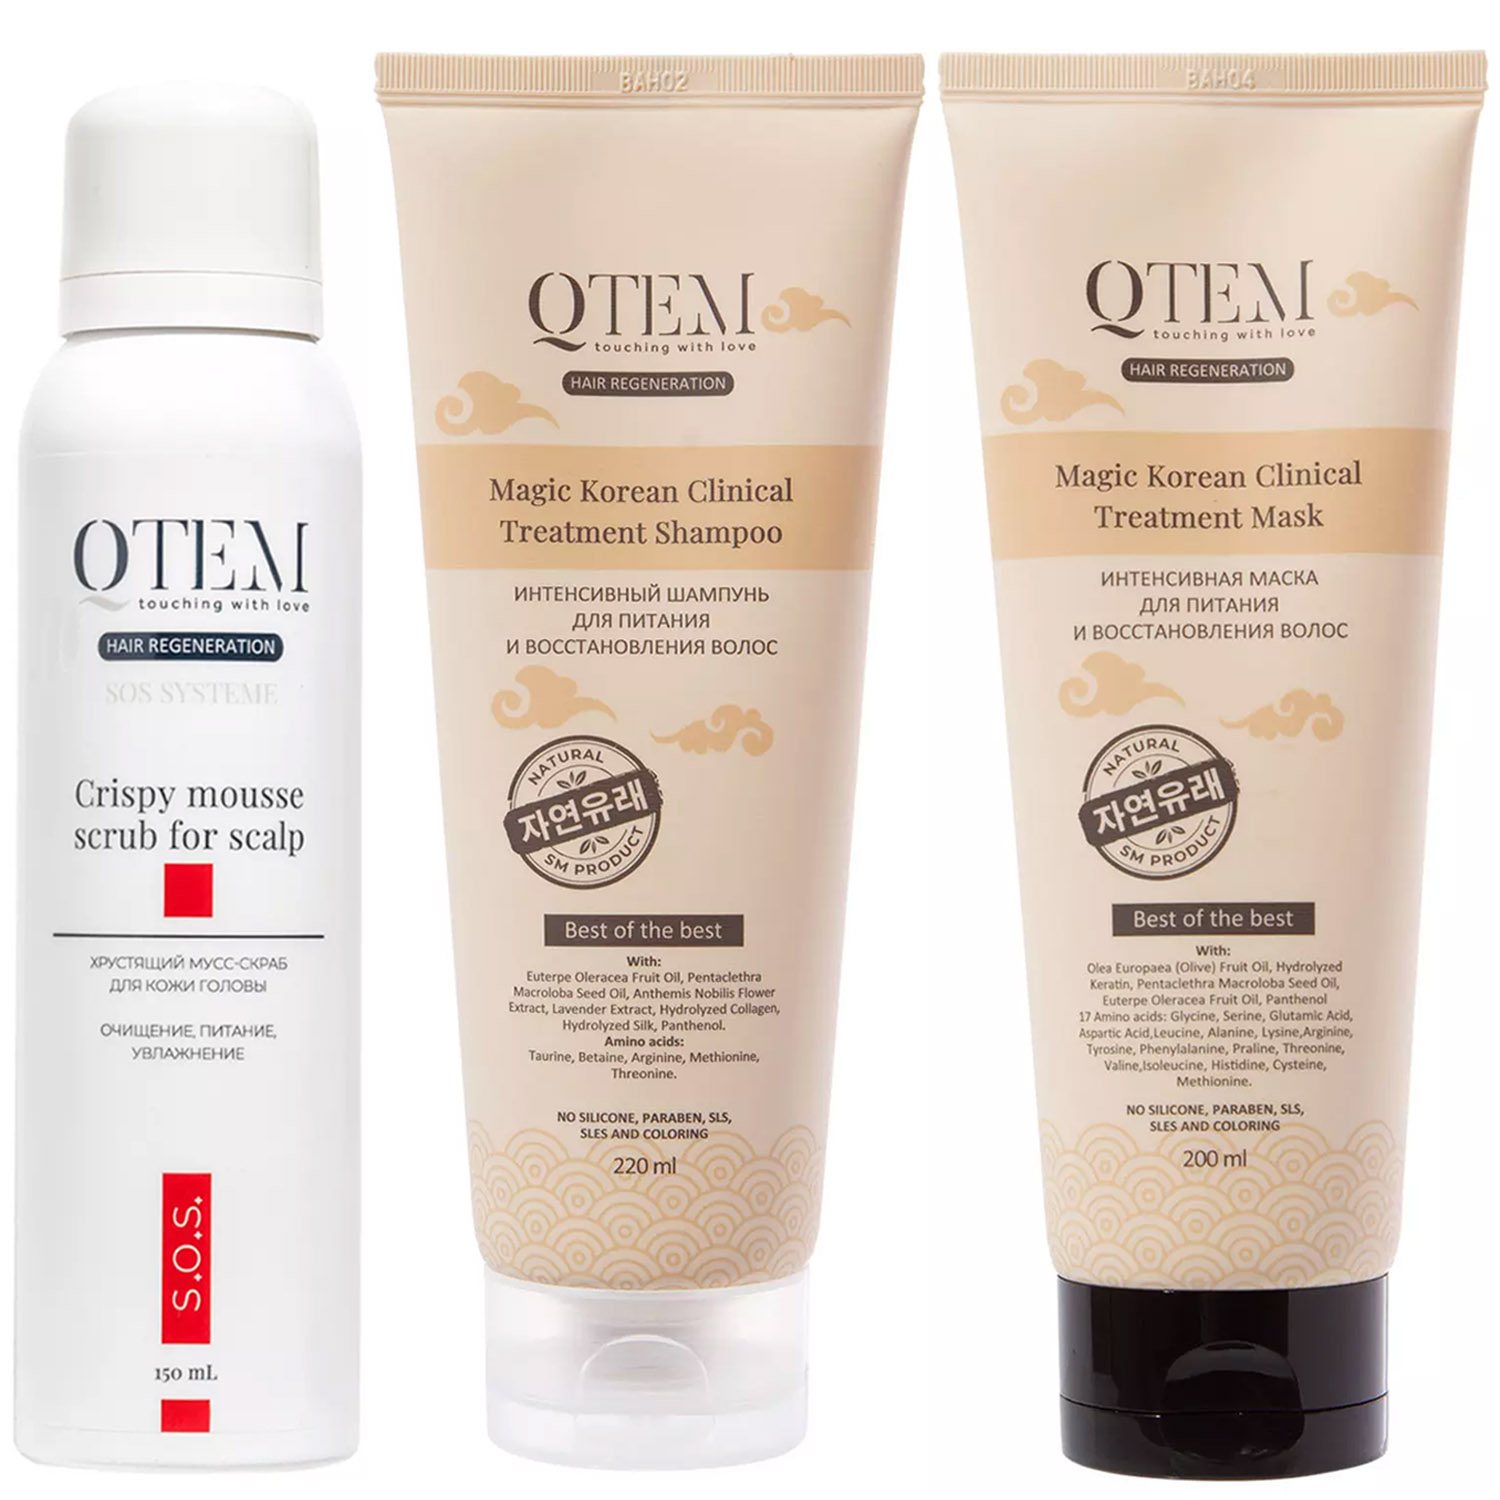 Qtem Набор для очищения и восстановления волос: шампунь 200 мл + маска 200 мл + скраб 150 мл (Qtem, Hair Regeneration)